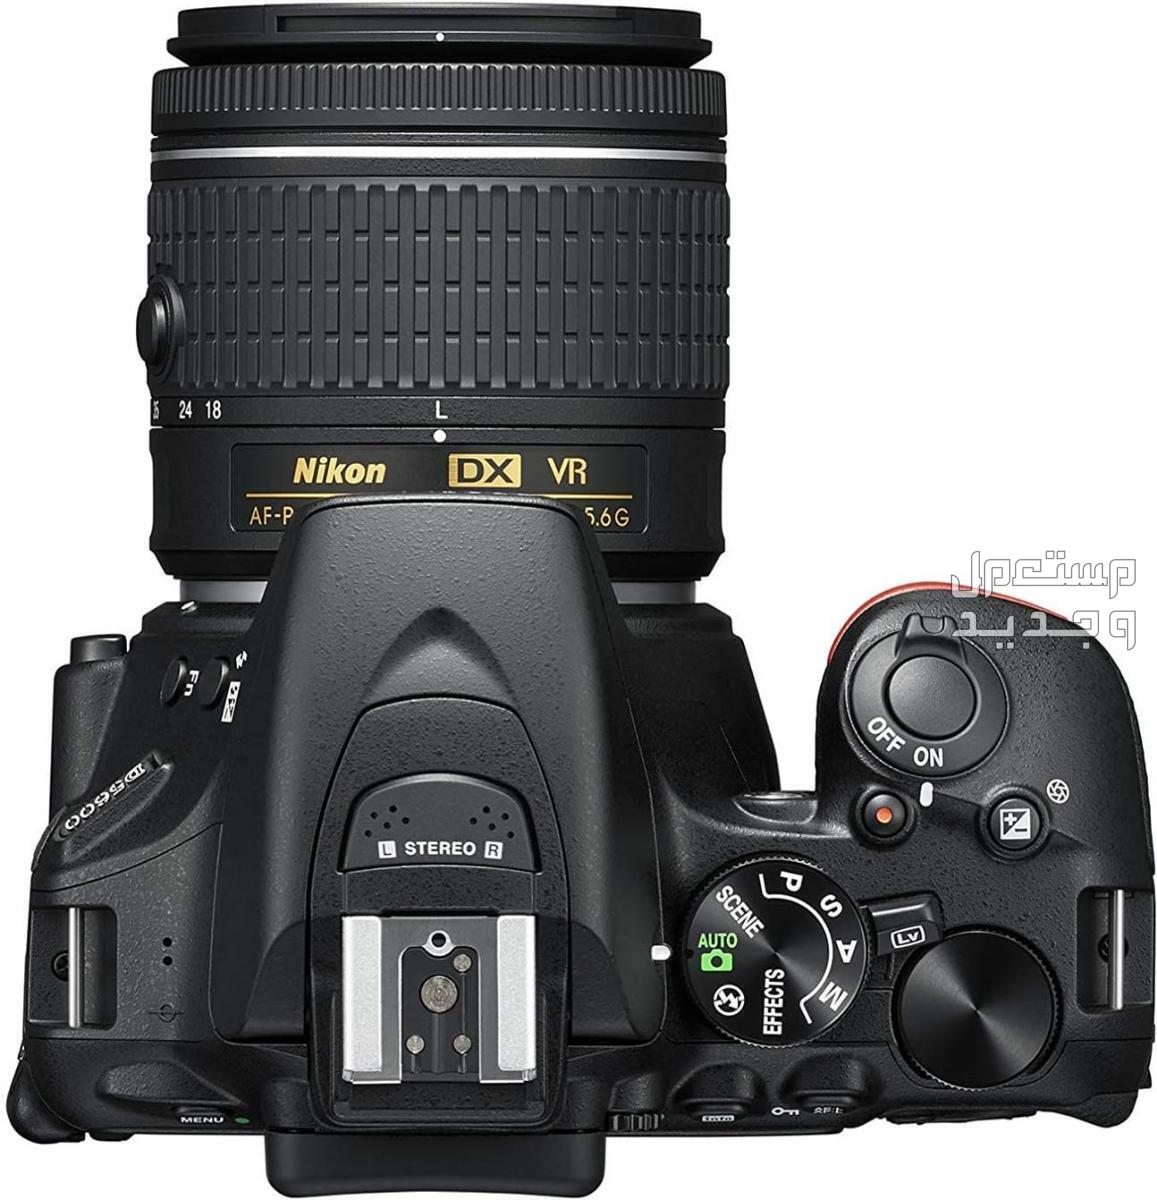 10 كاميرات تصوير ماركات عالمية بأسعار رخيصة في السودان مميزات كاميرا Nikon D5600